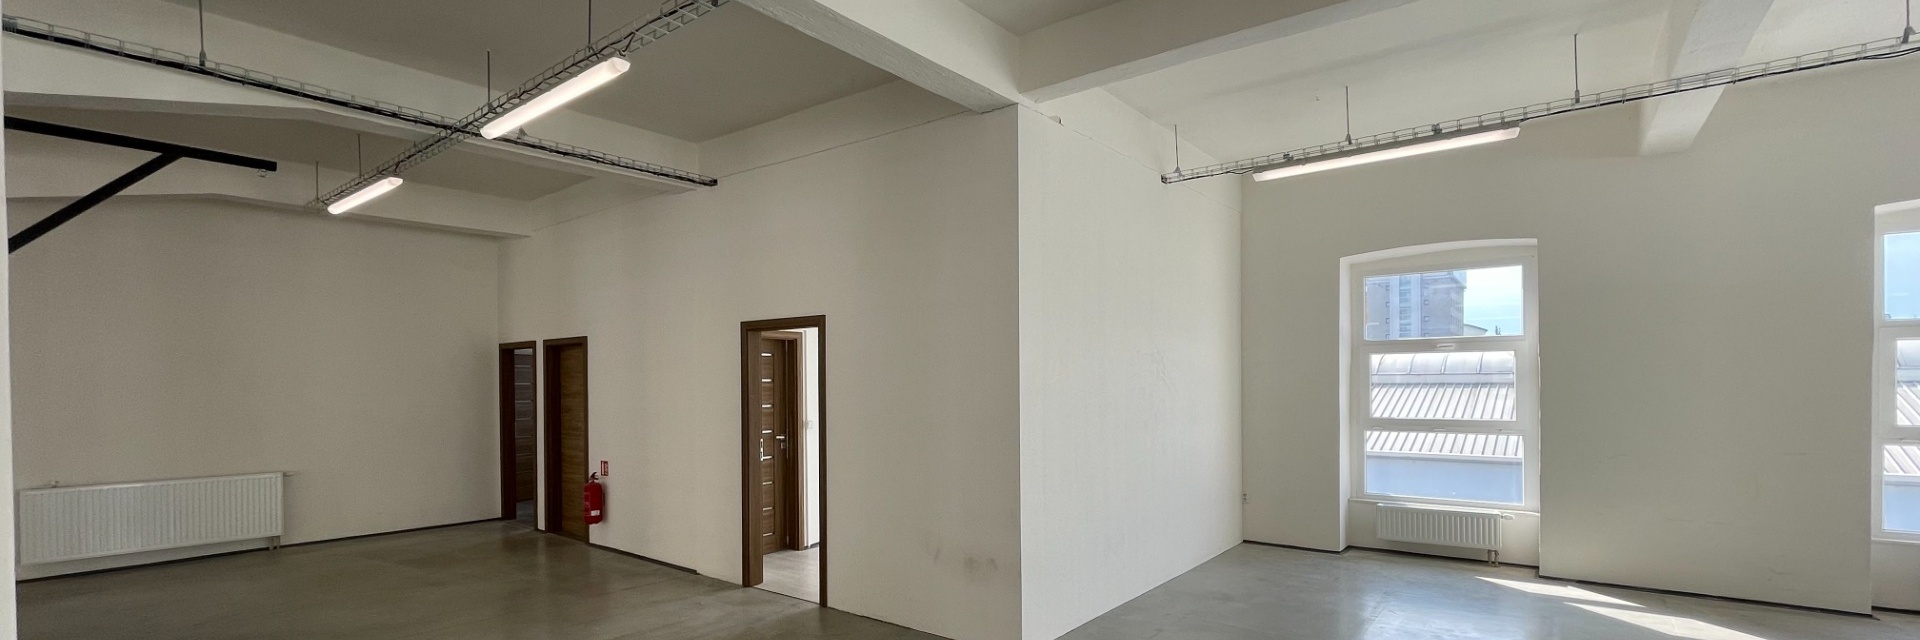 Pronájem nebytových prostor 414 m² po rekonstrukci ve 3.NP, ulice Mlýnská, Brno